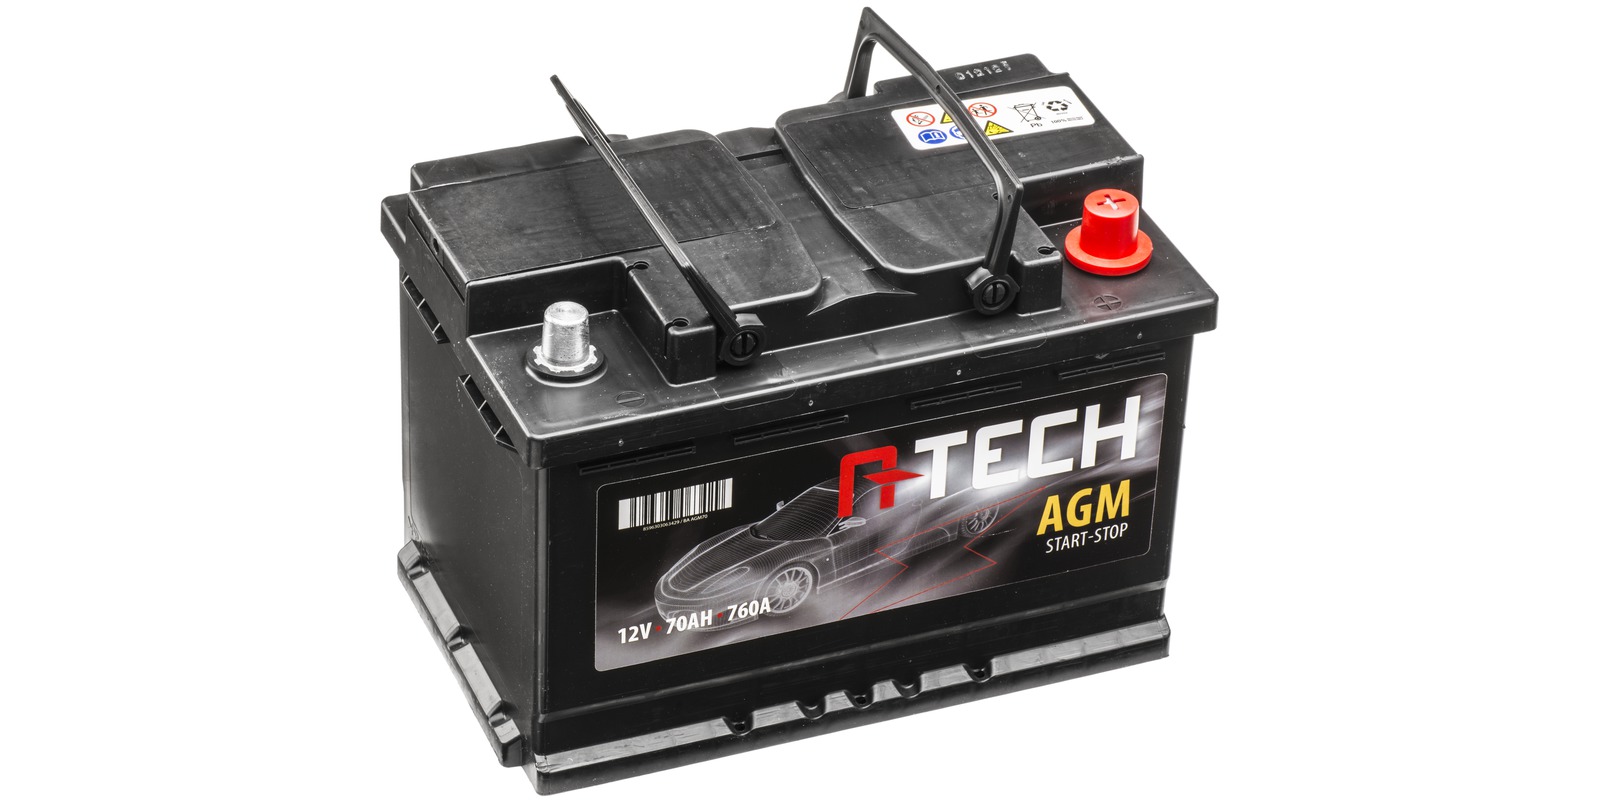 Obrázek produktu 70Ah AGM baterie START-STOP, 760A, pravá A-TECH AGM 278x175x190 57002